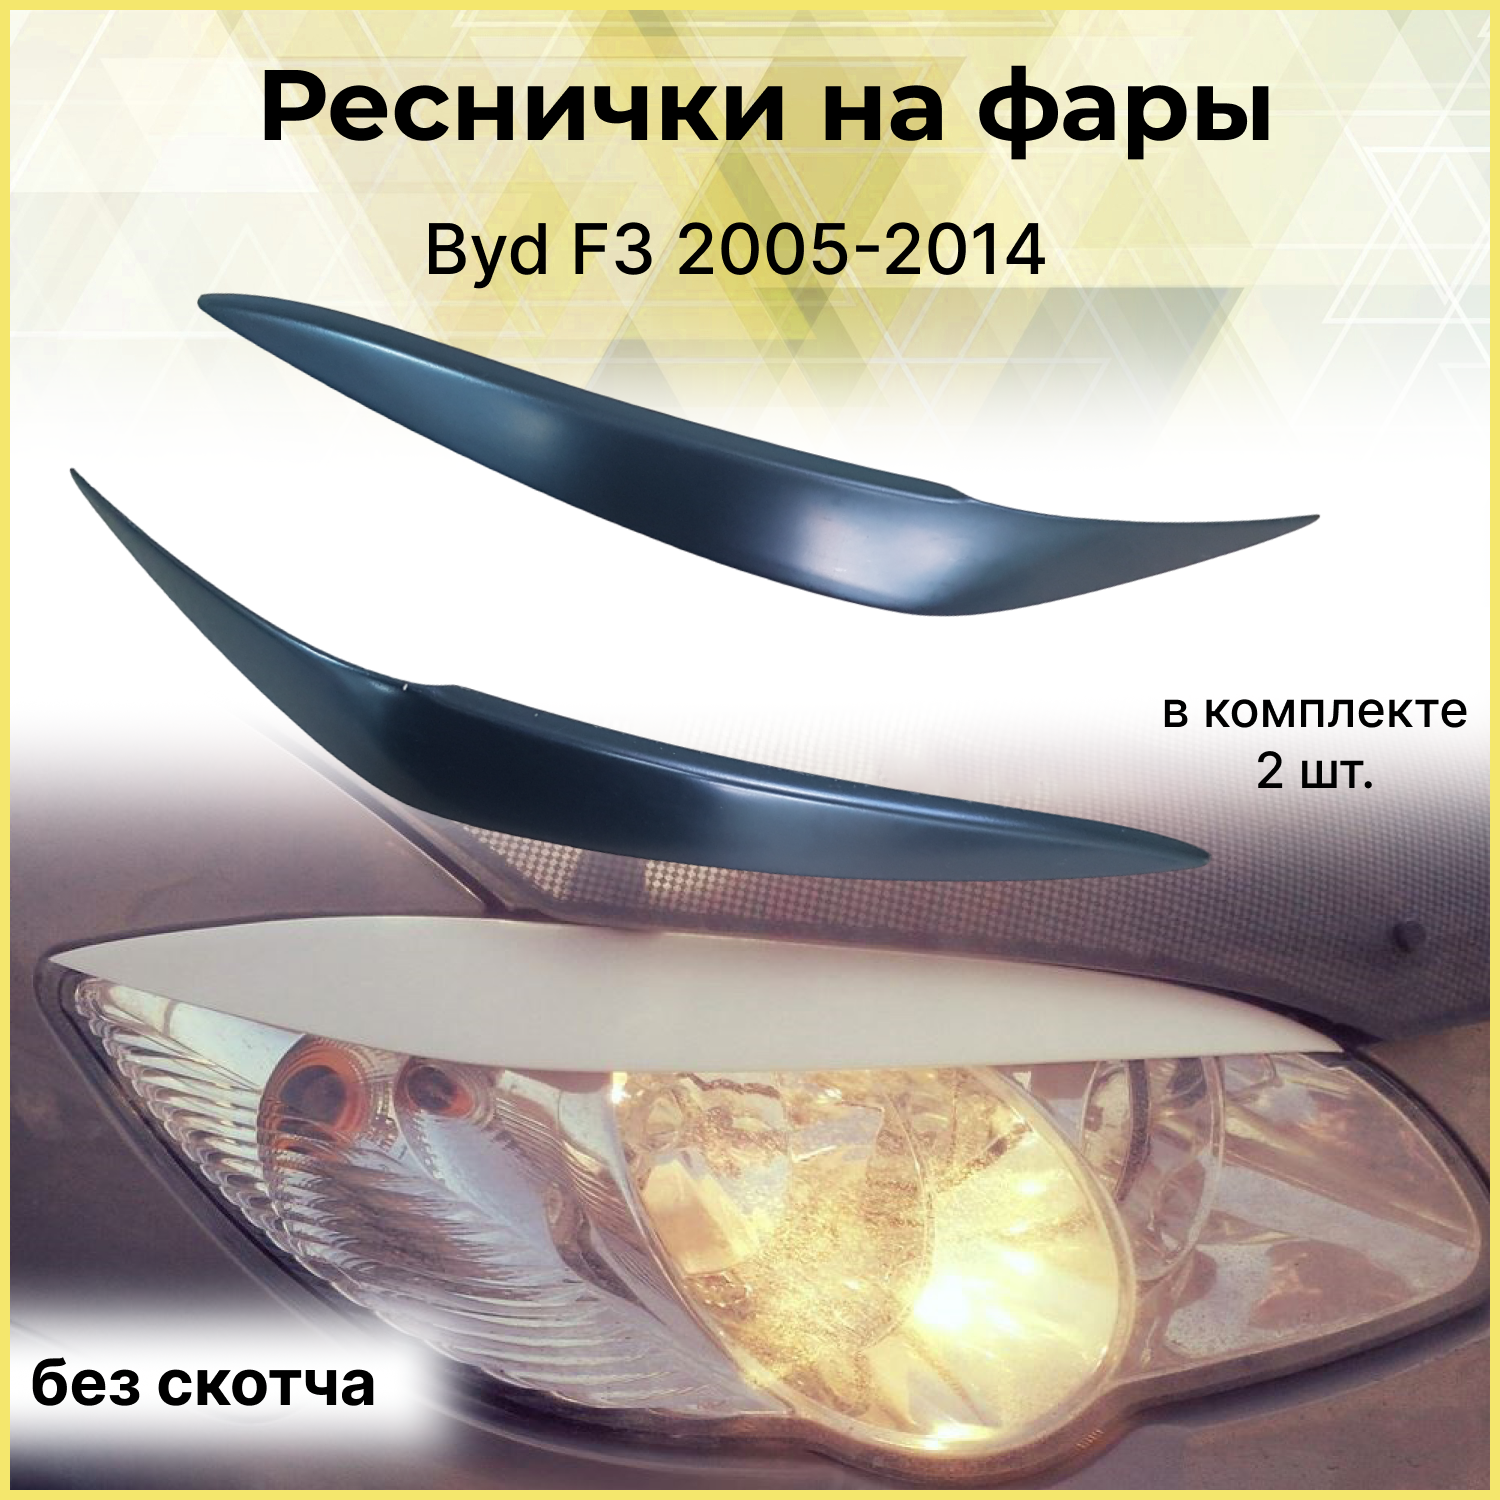 Реснички на фары для Byd F3 2005-2014